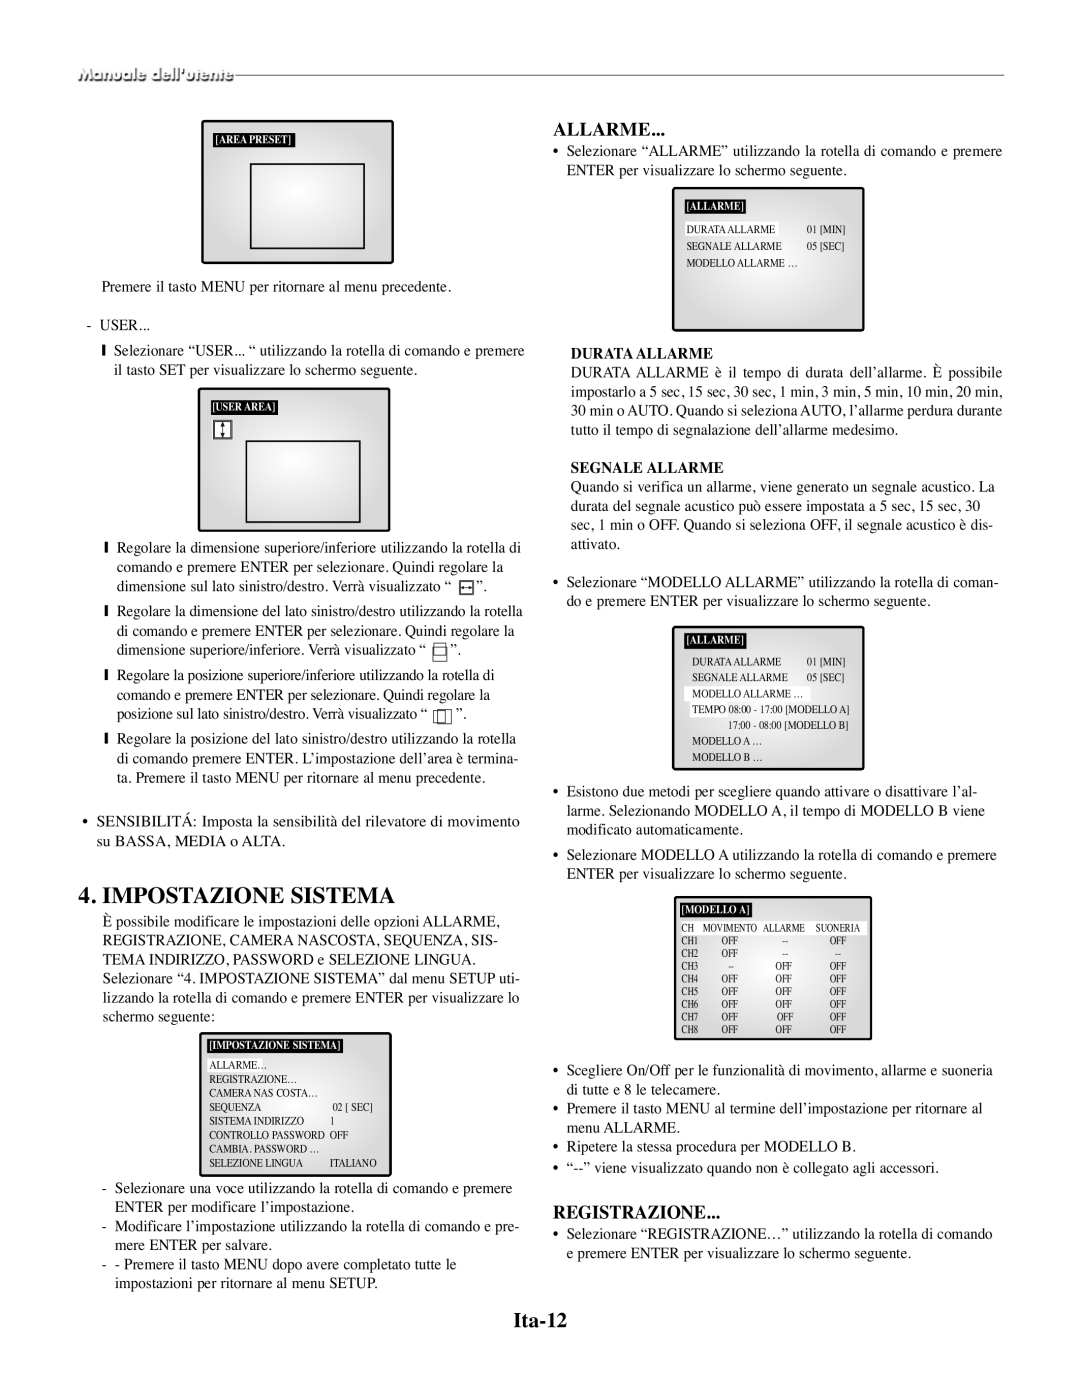 Samsung SMO-210TRP, SMO-210MP/UMG manual Impostazione Sistema, Ita-12, Registrazione, Durata Allarme, Segnale Allarme 